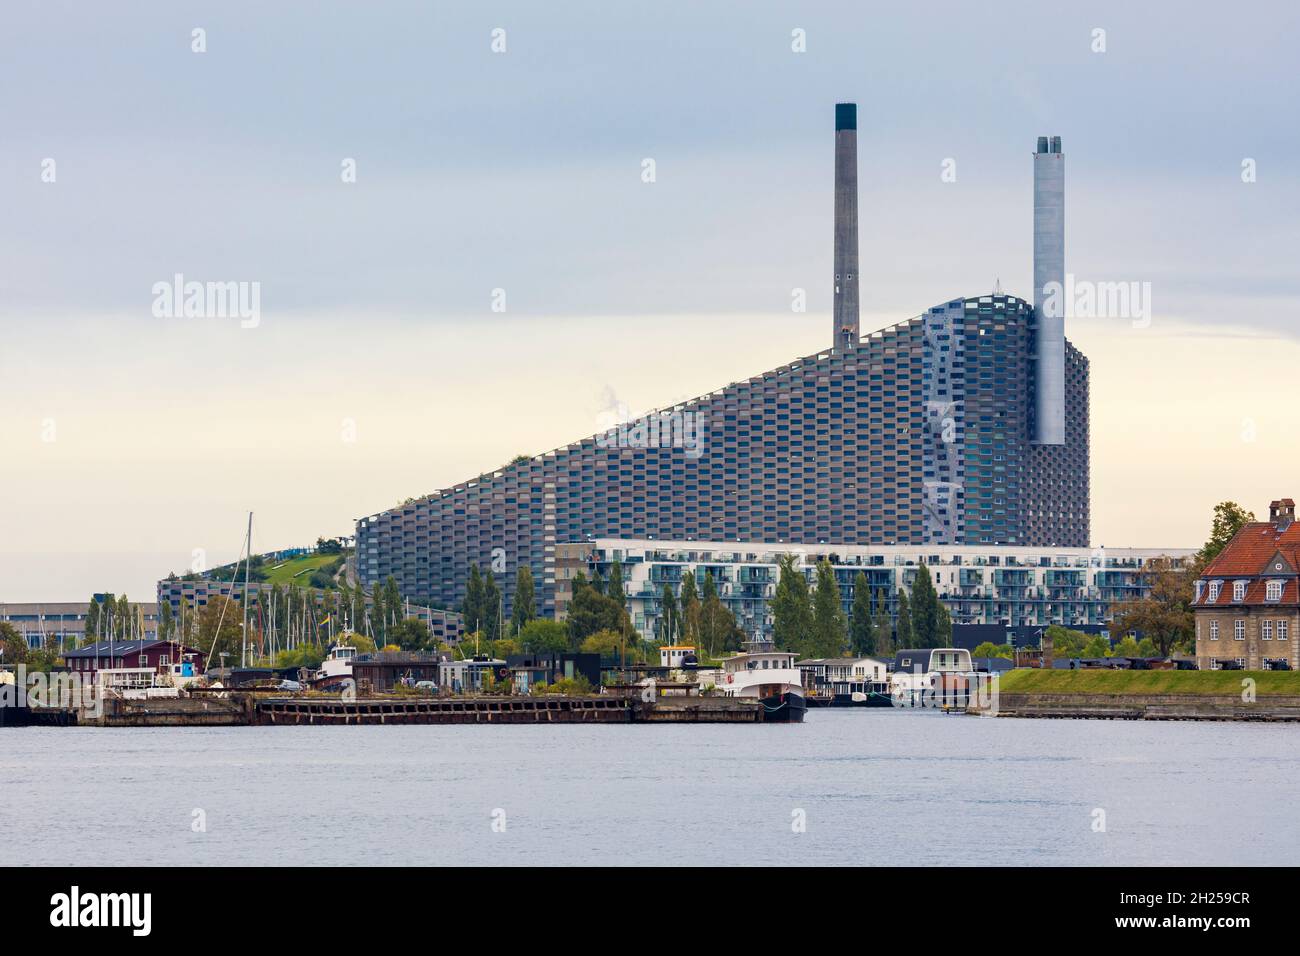 CopenHill, un impianto combinato di produzione di calore ed energia, progettato da Bjarke Ingels Group, con una pista da sci artificiale sul tetto Foto Stock